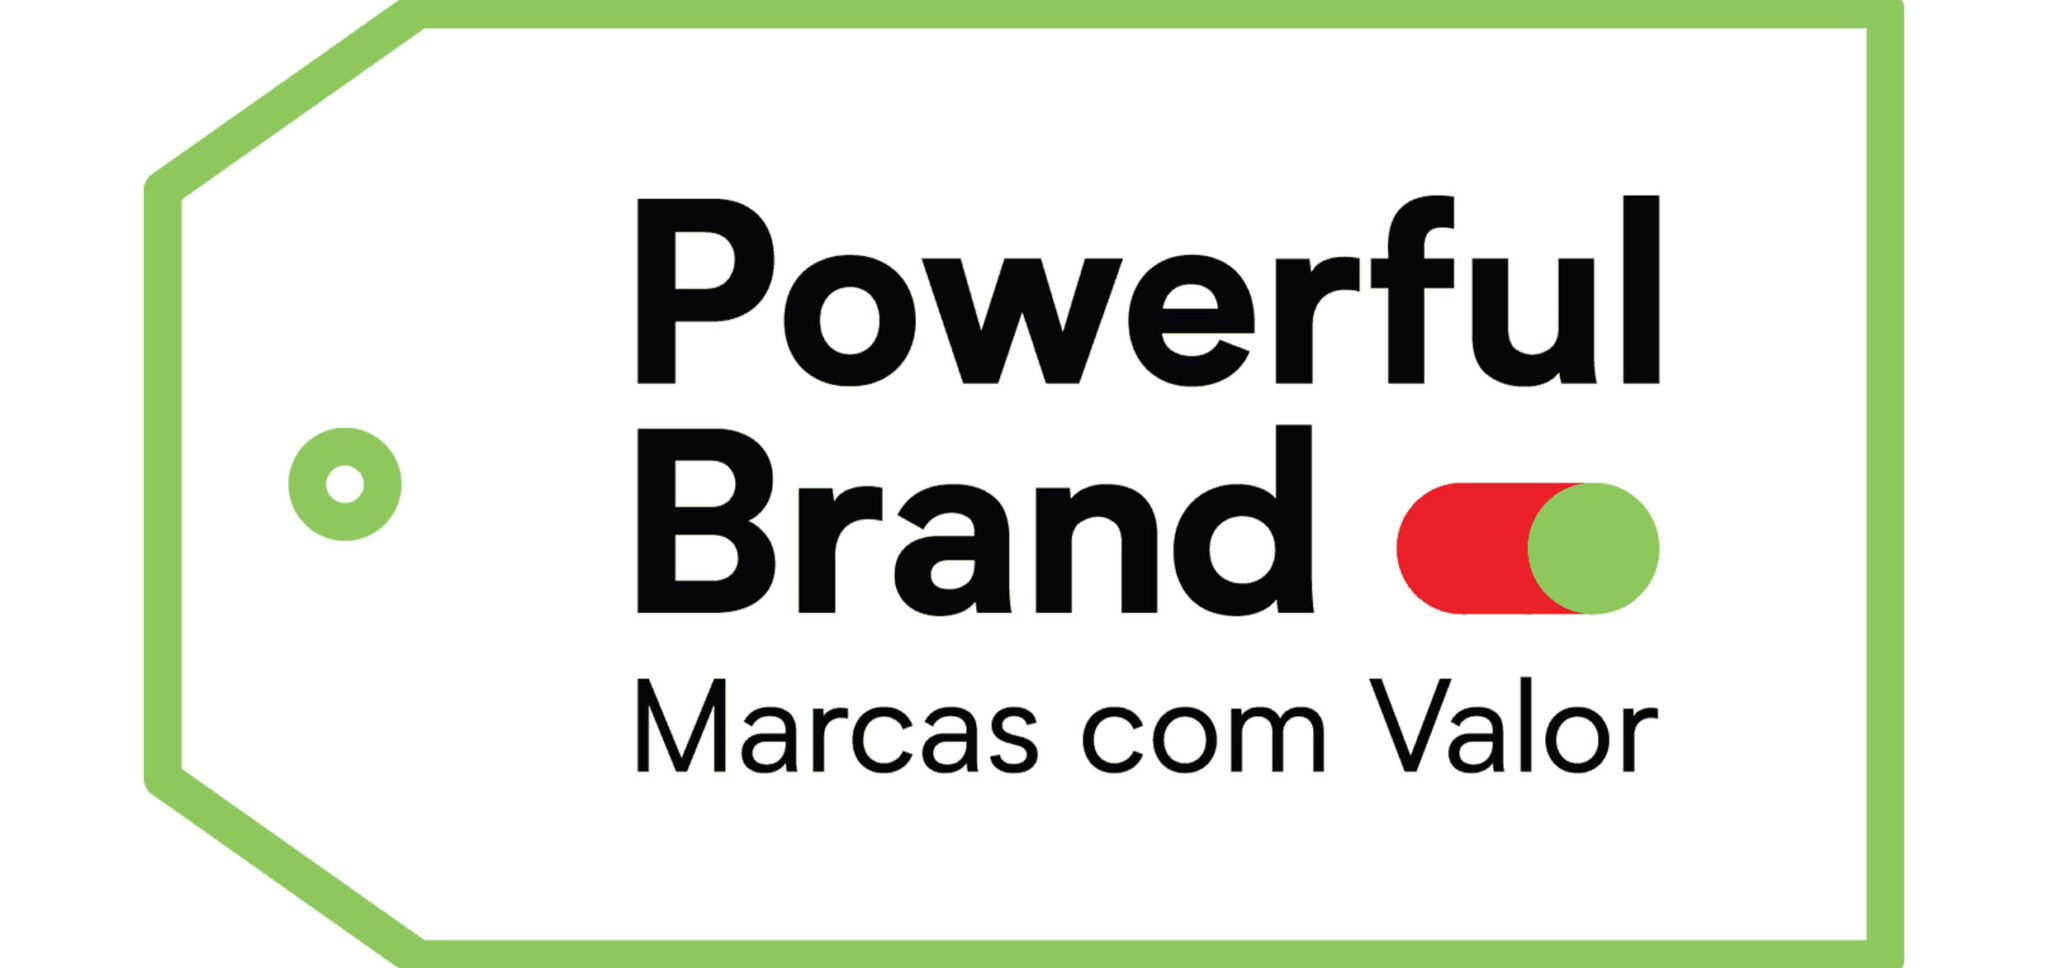 powerful-brand-marcas-com-valor-4